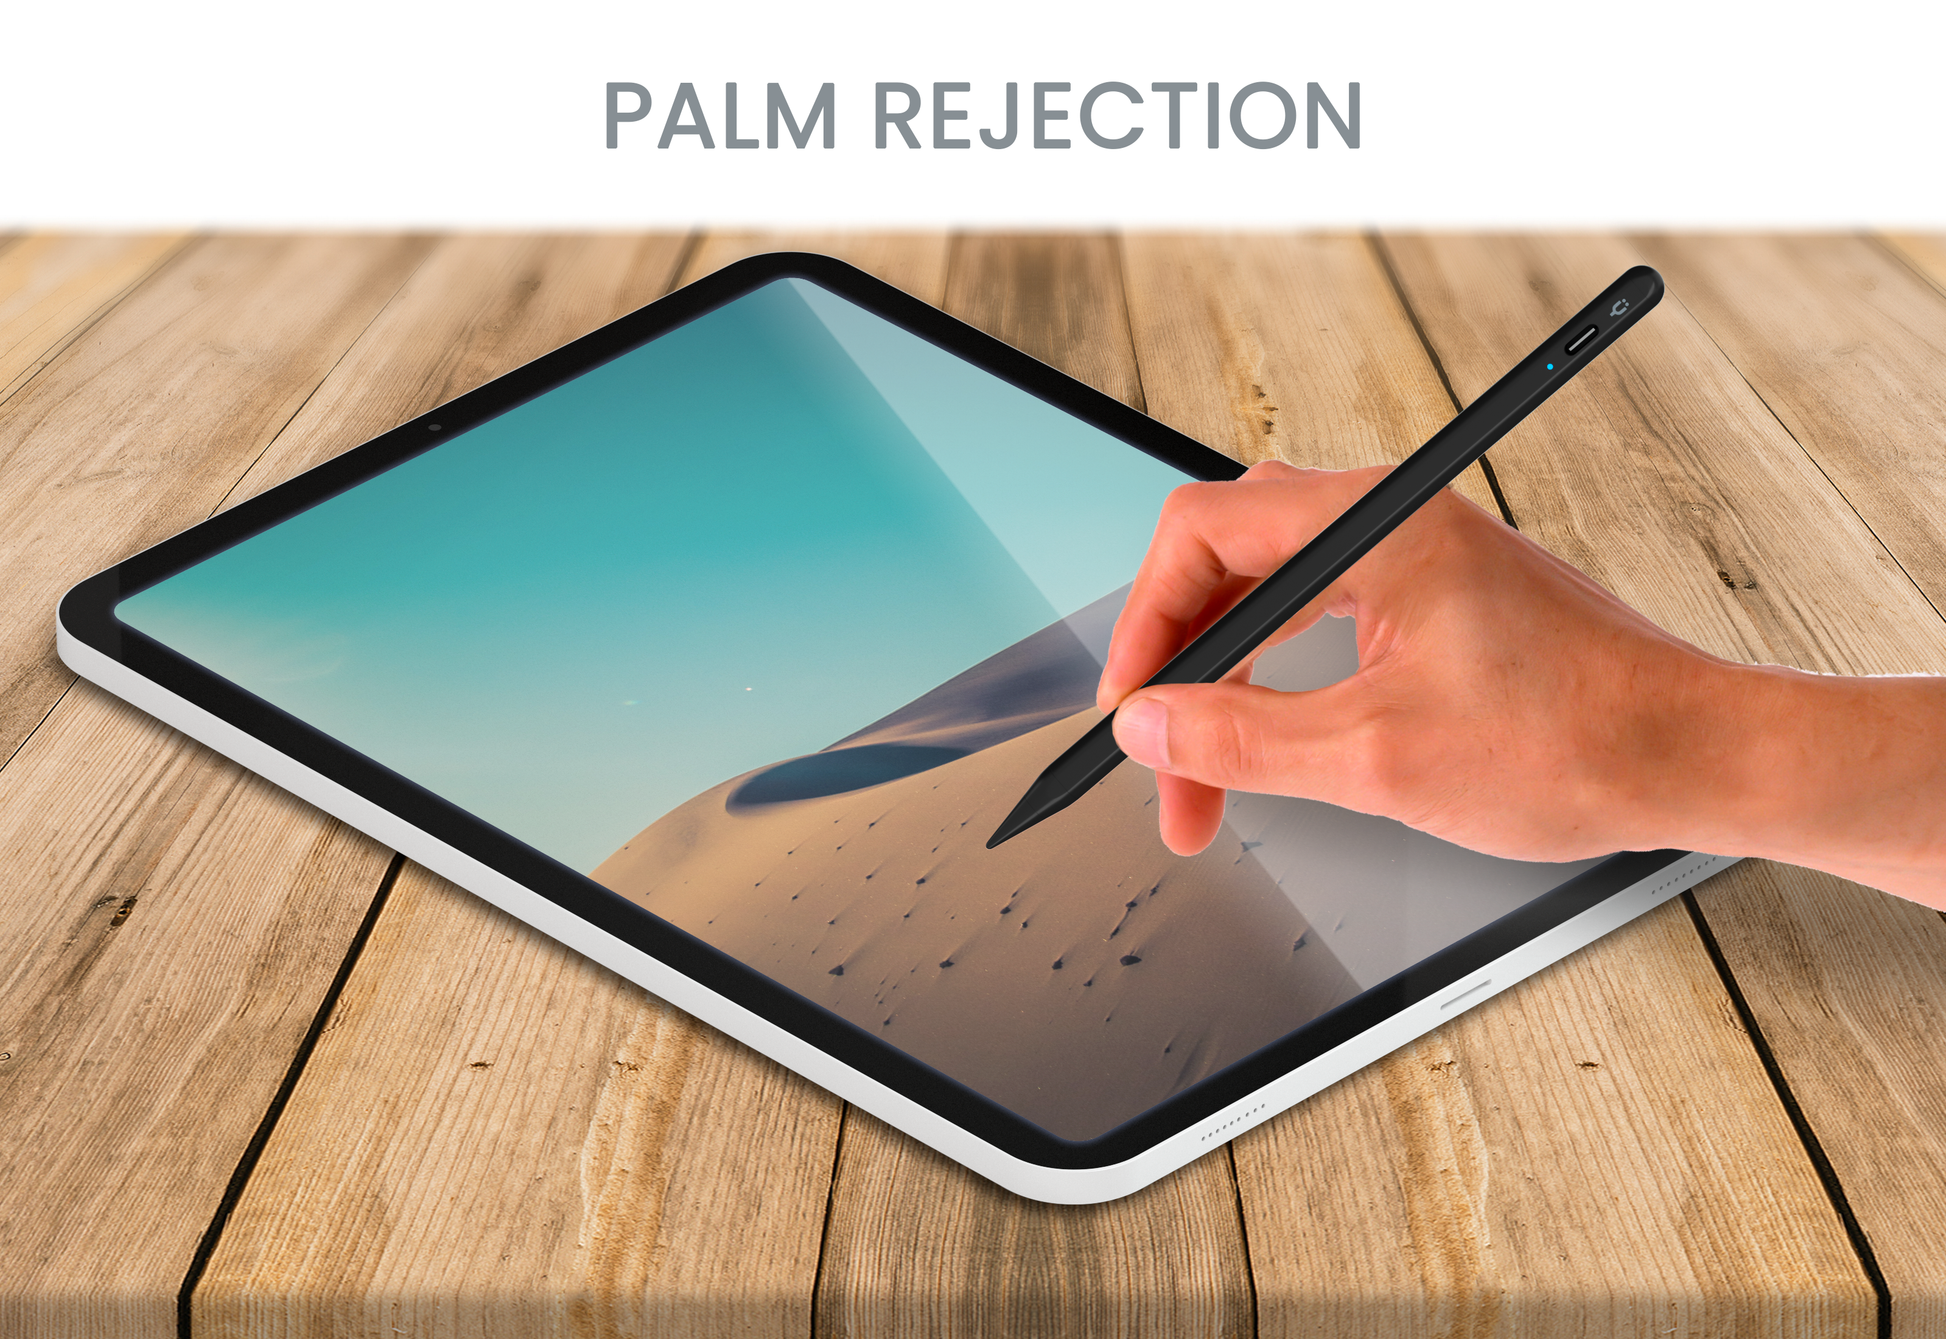 Tinymoose Pencil Pro Stylus Pen Palm Rejection